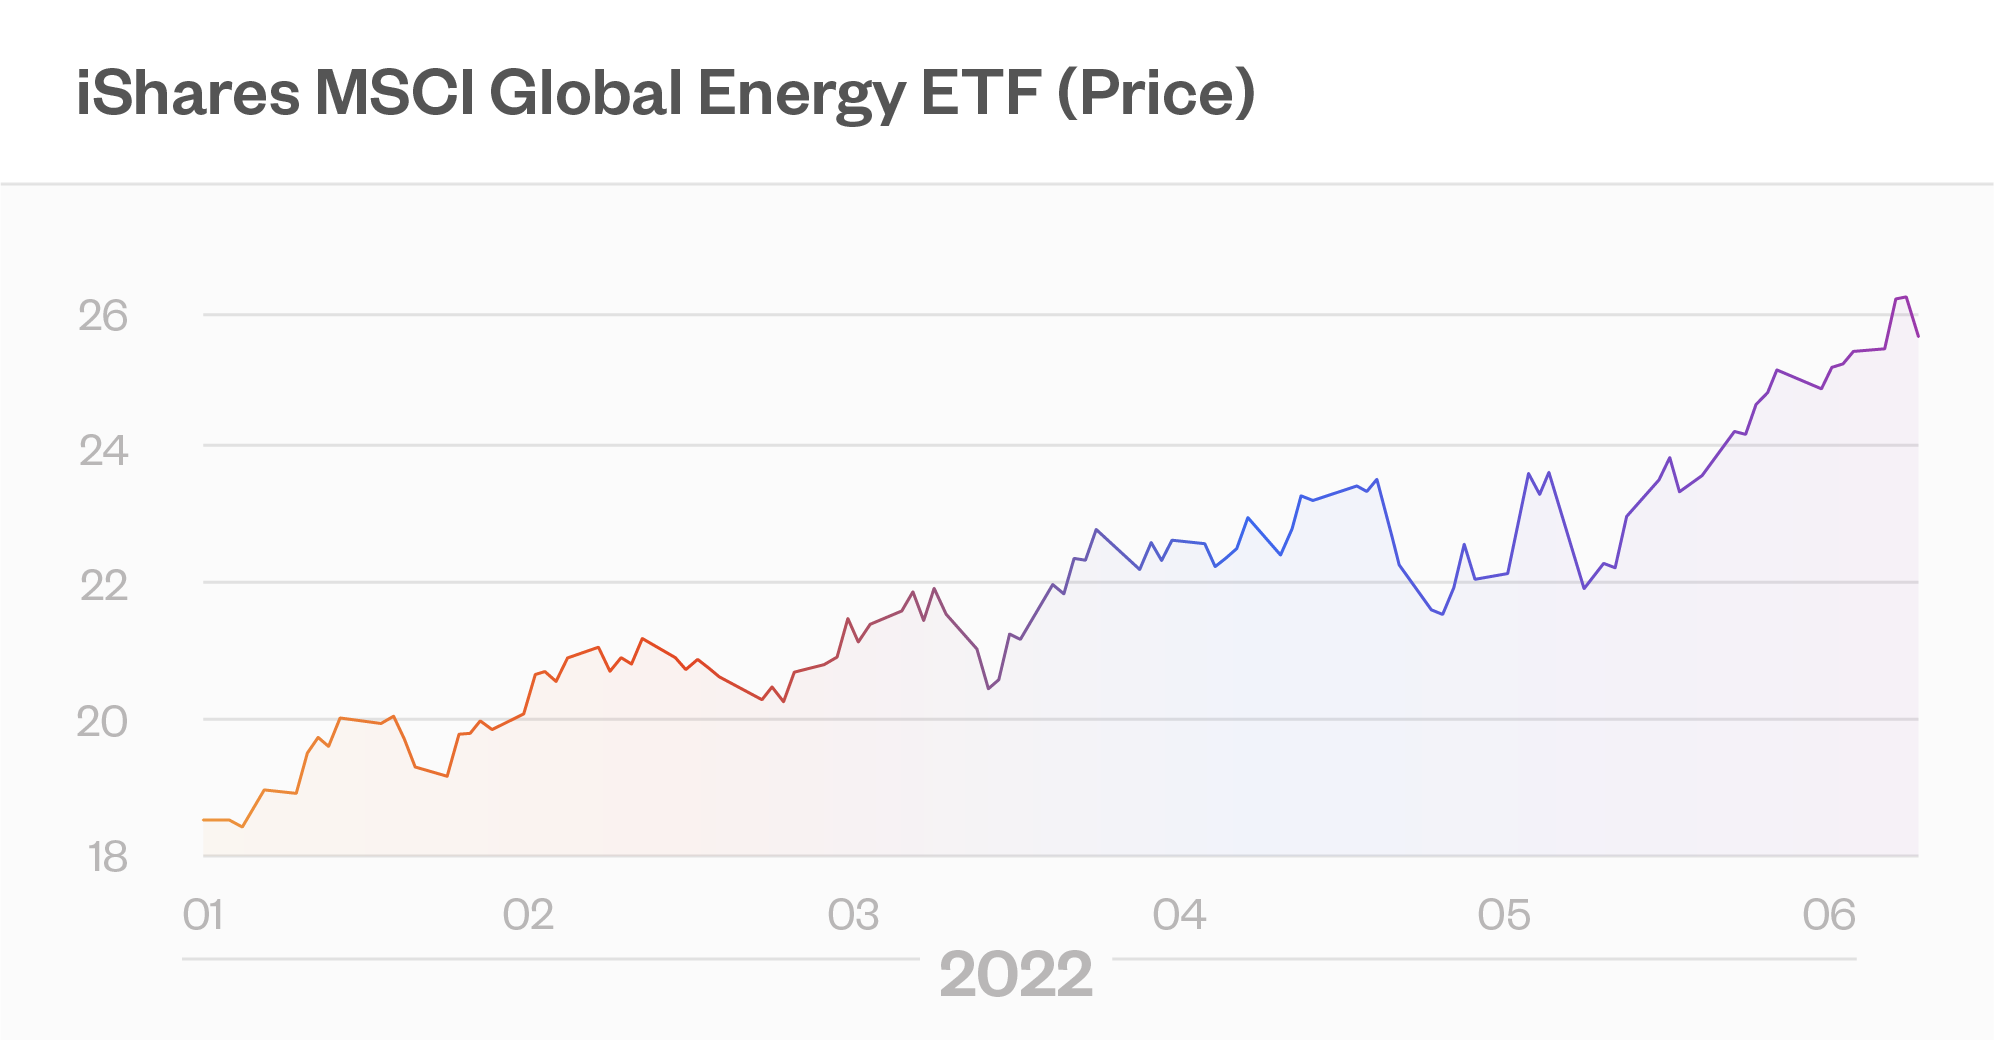 iShares MSCI Global Energy ETF (Price)